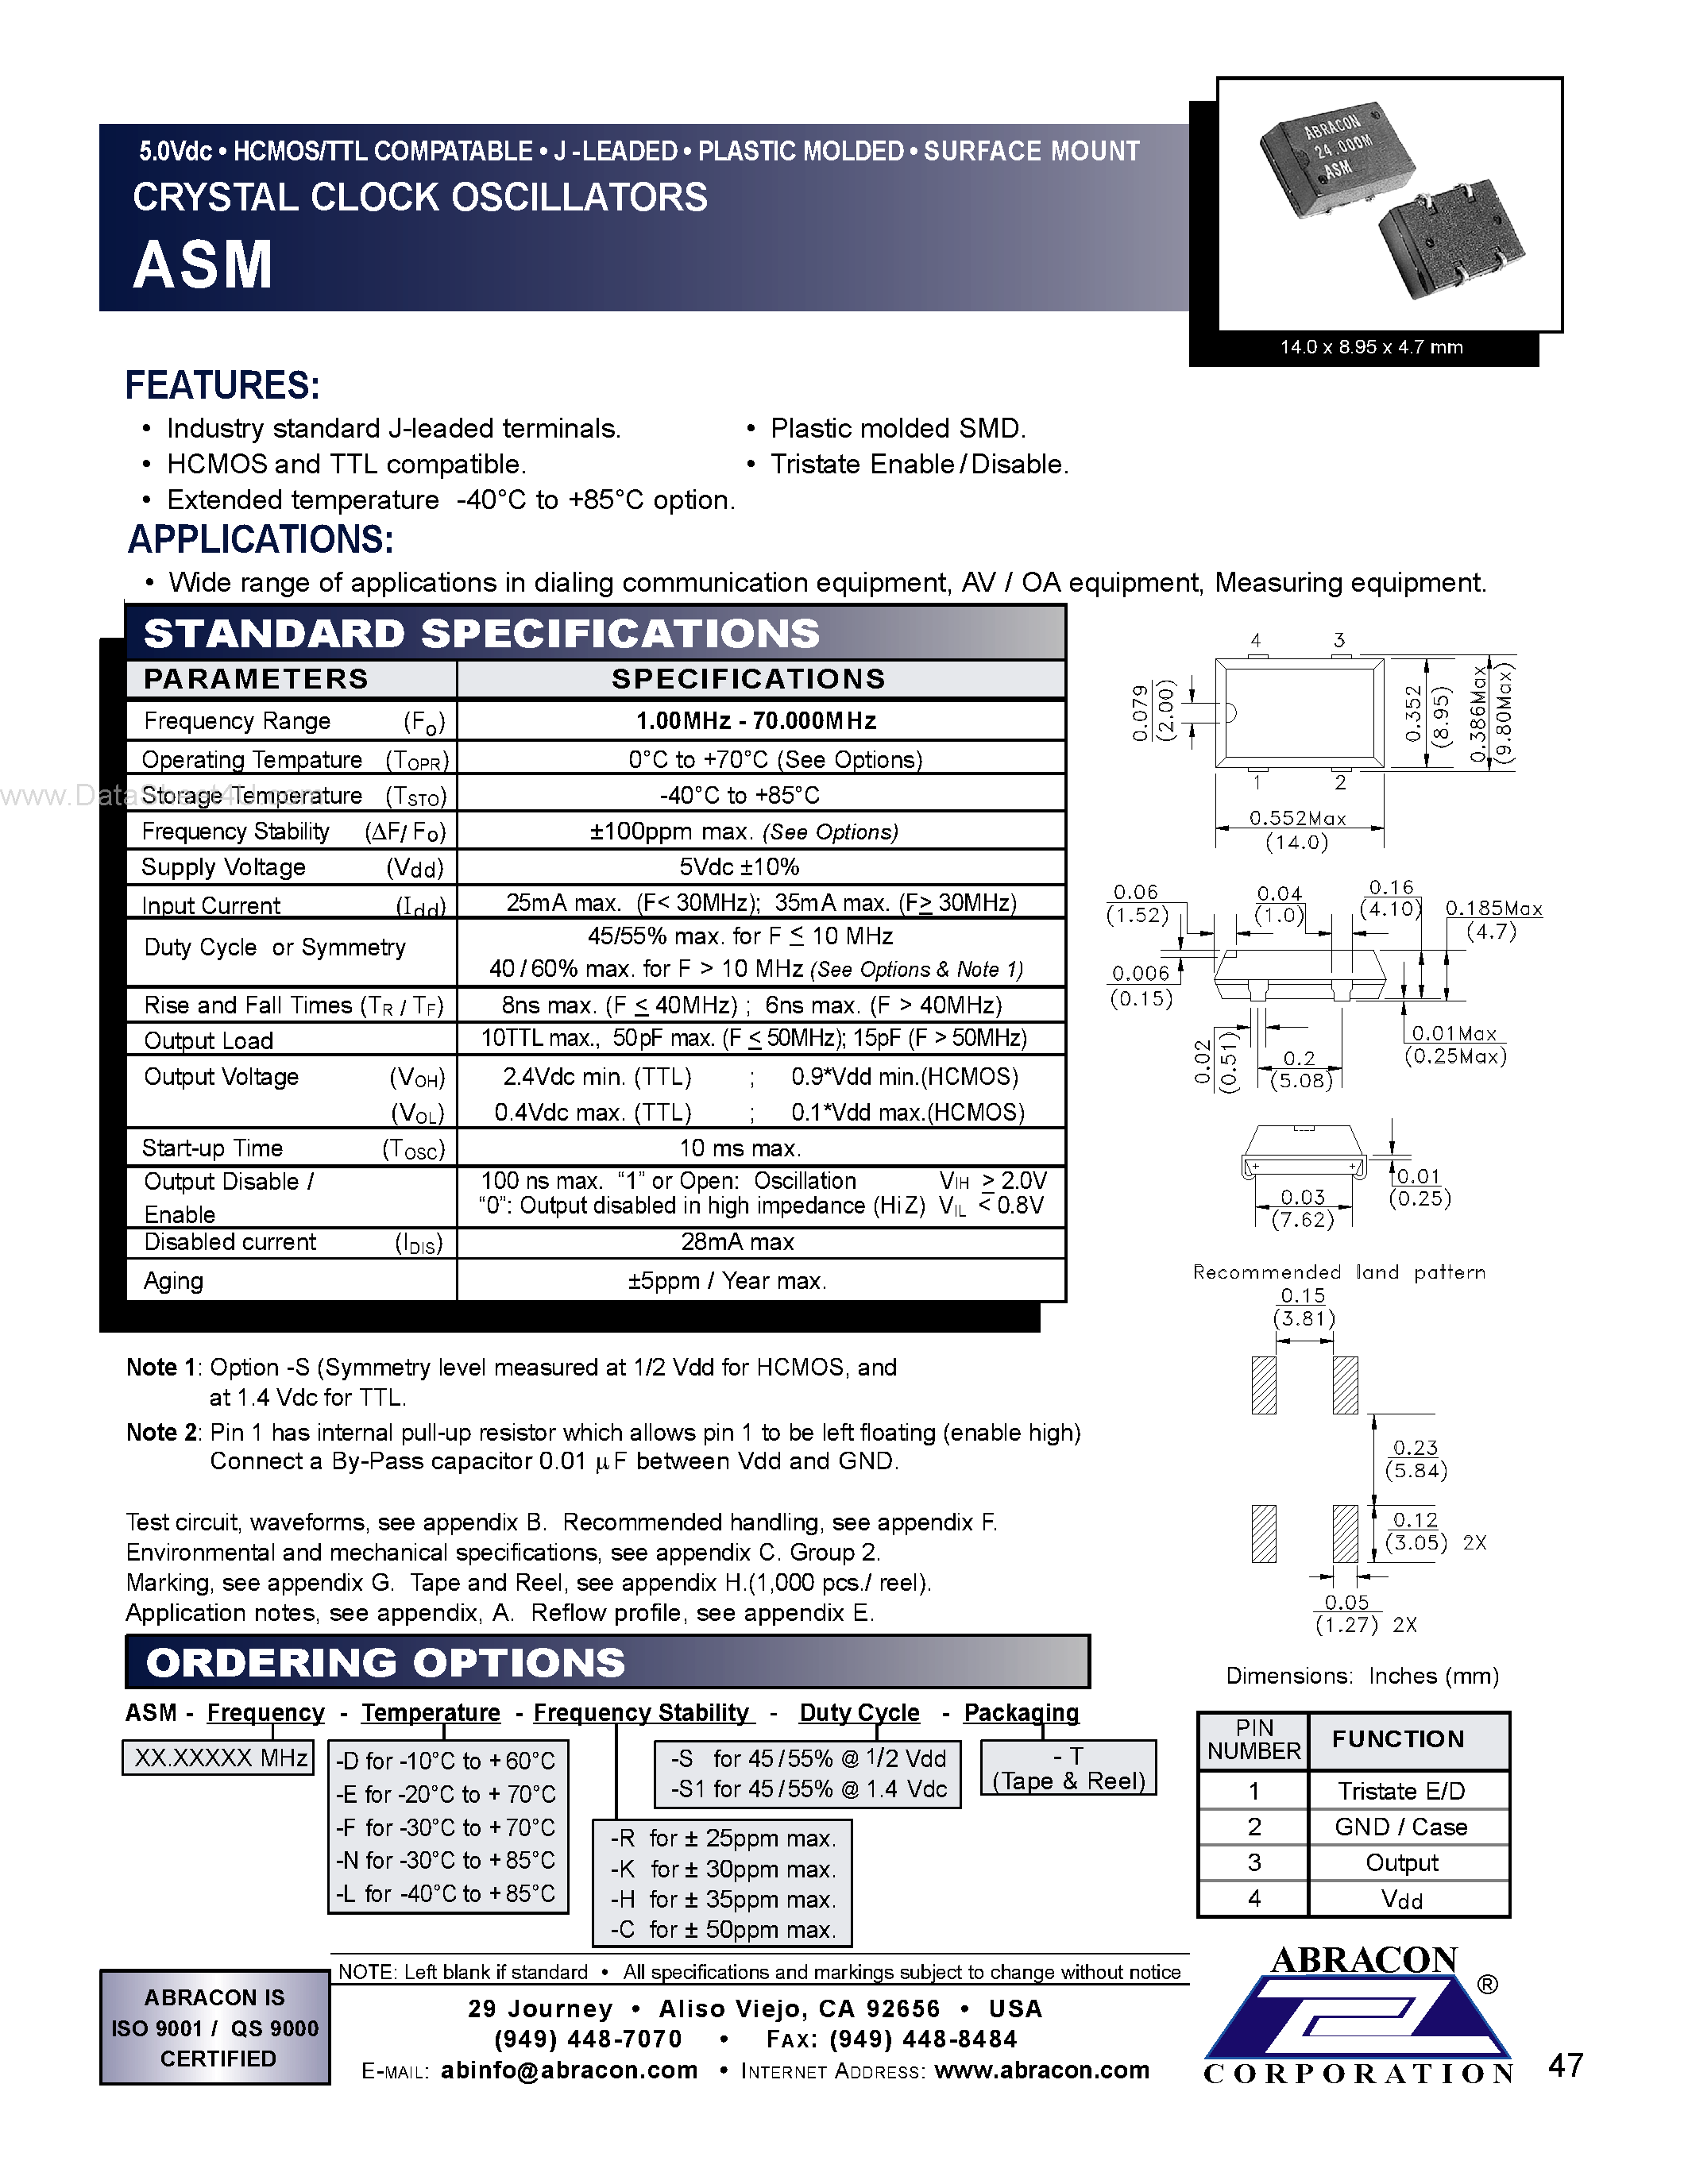 Даташит ASM-7.3728MHZ-E - Crystal Clock Oscillators страница 1